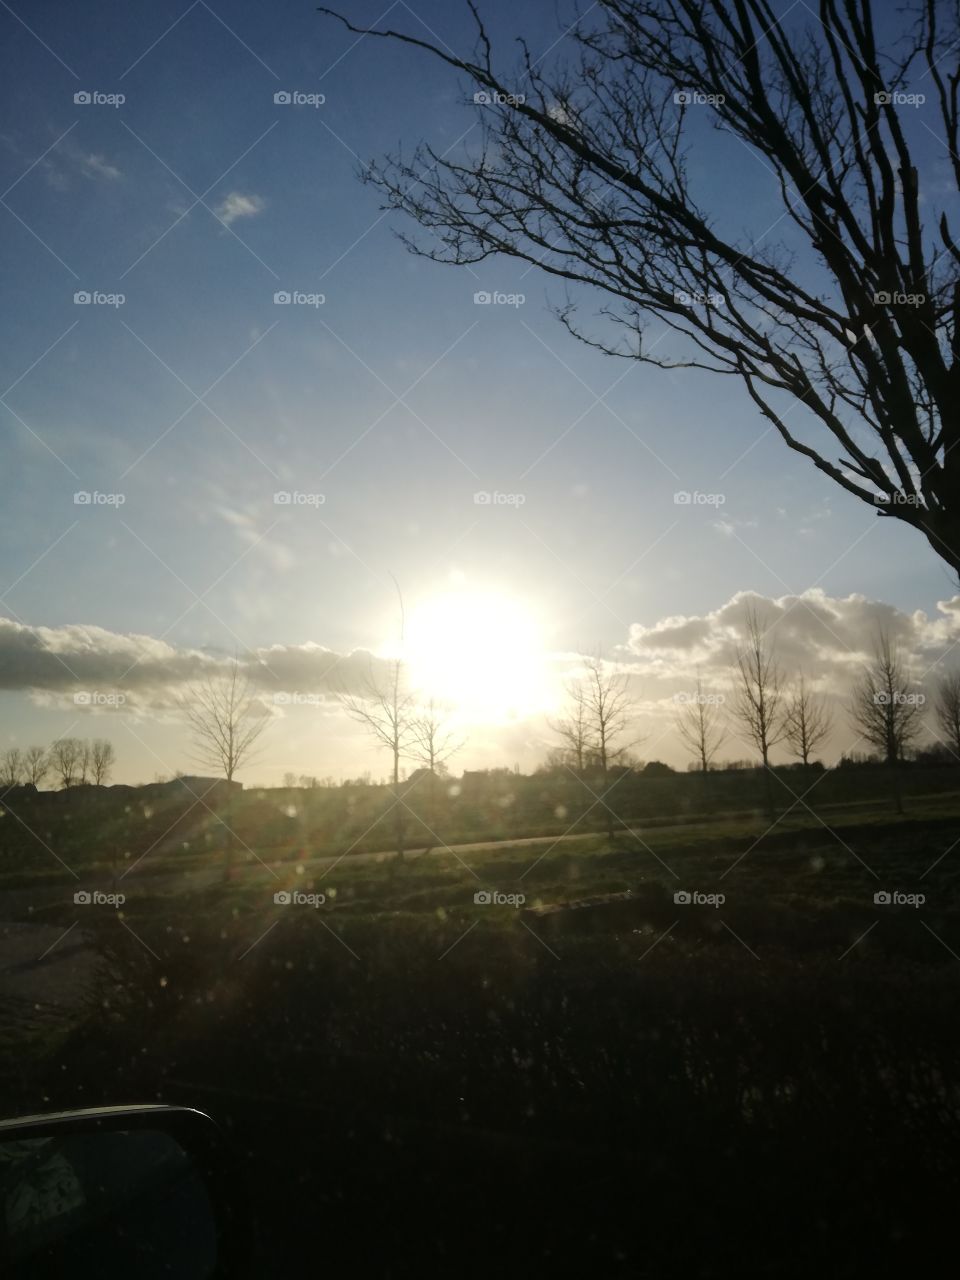 Sun in the sky